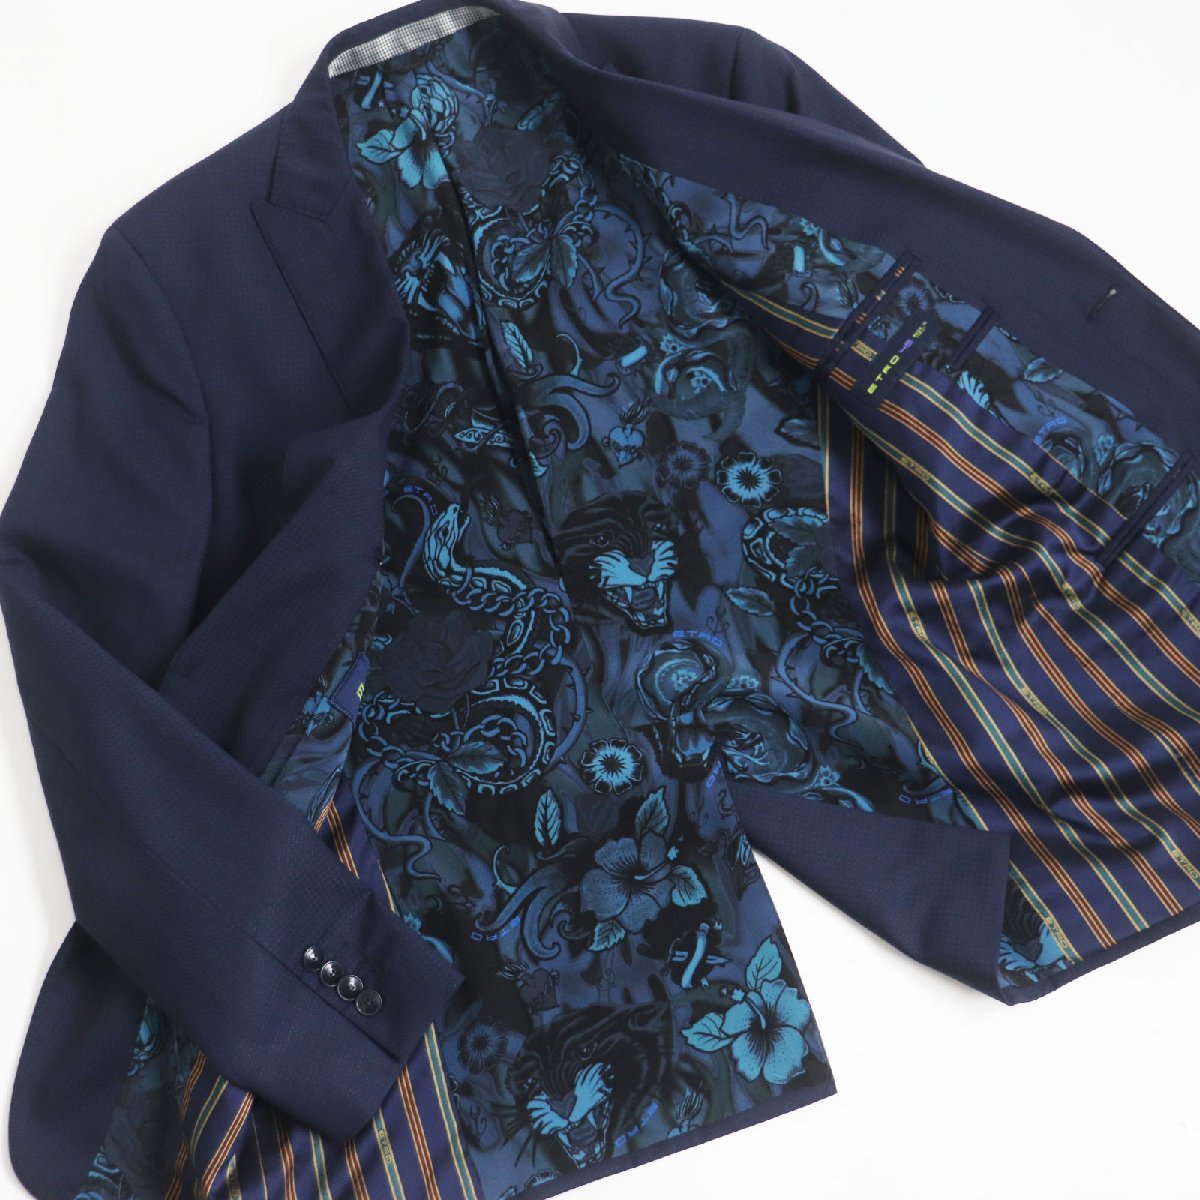  превосходный товар ETRO Etro 2017 год производства шерсть подкладка шелк 100% подкладка peiz Lee рисунок одиночный костюм-тройка выставить темно-синий 46 сделано в Италии стандартный товар мужской 